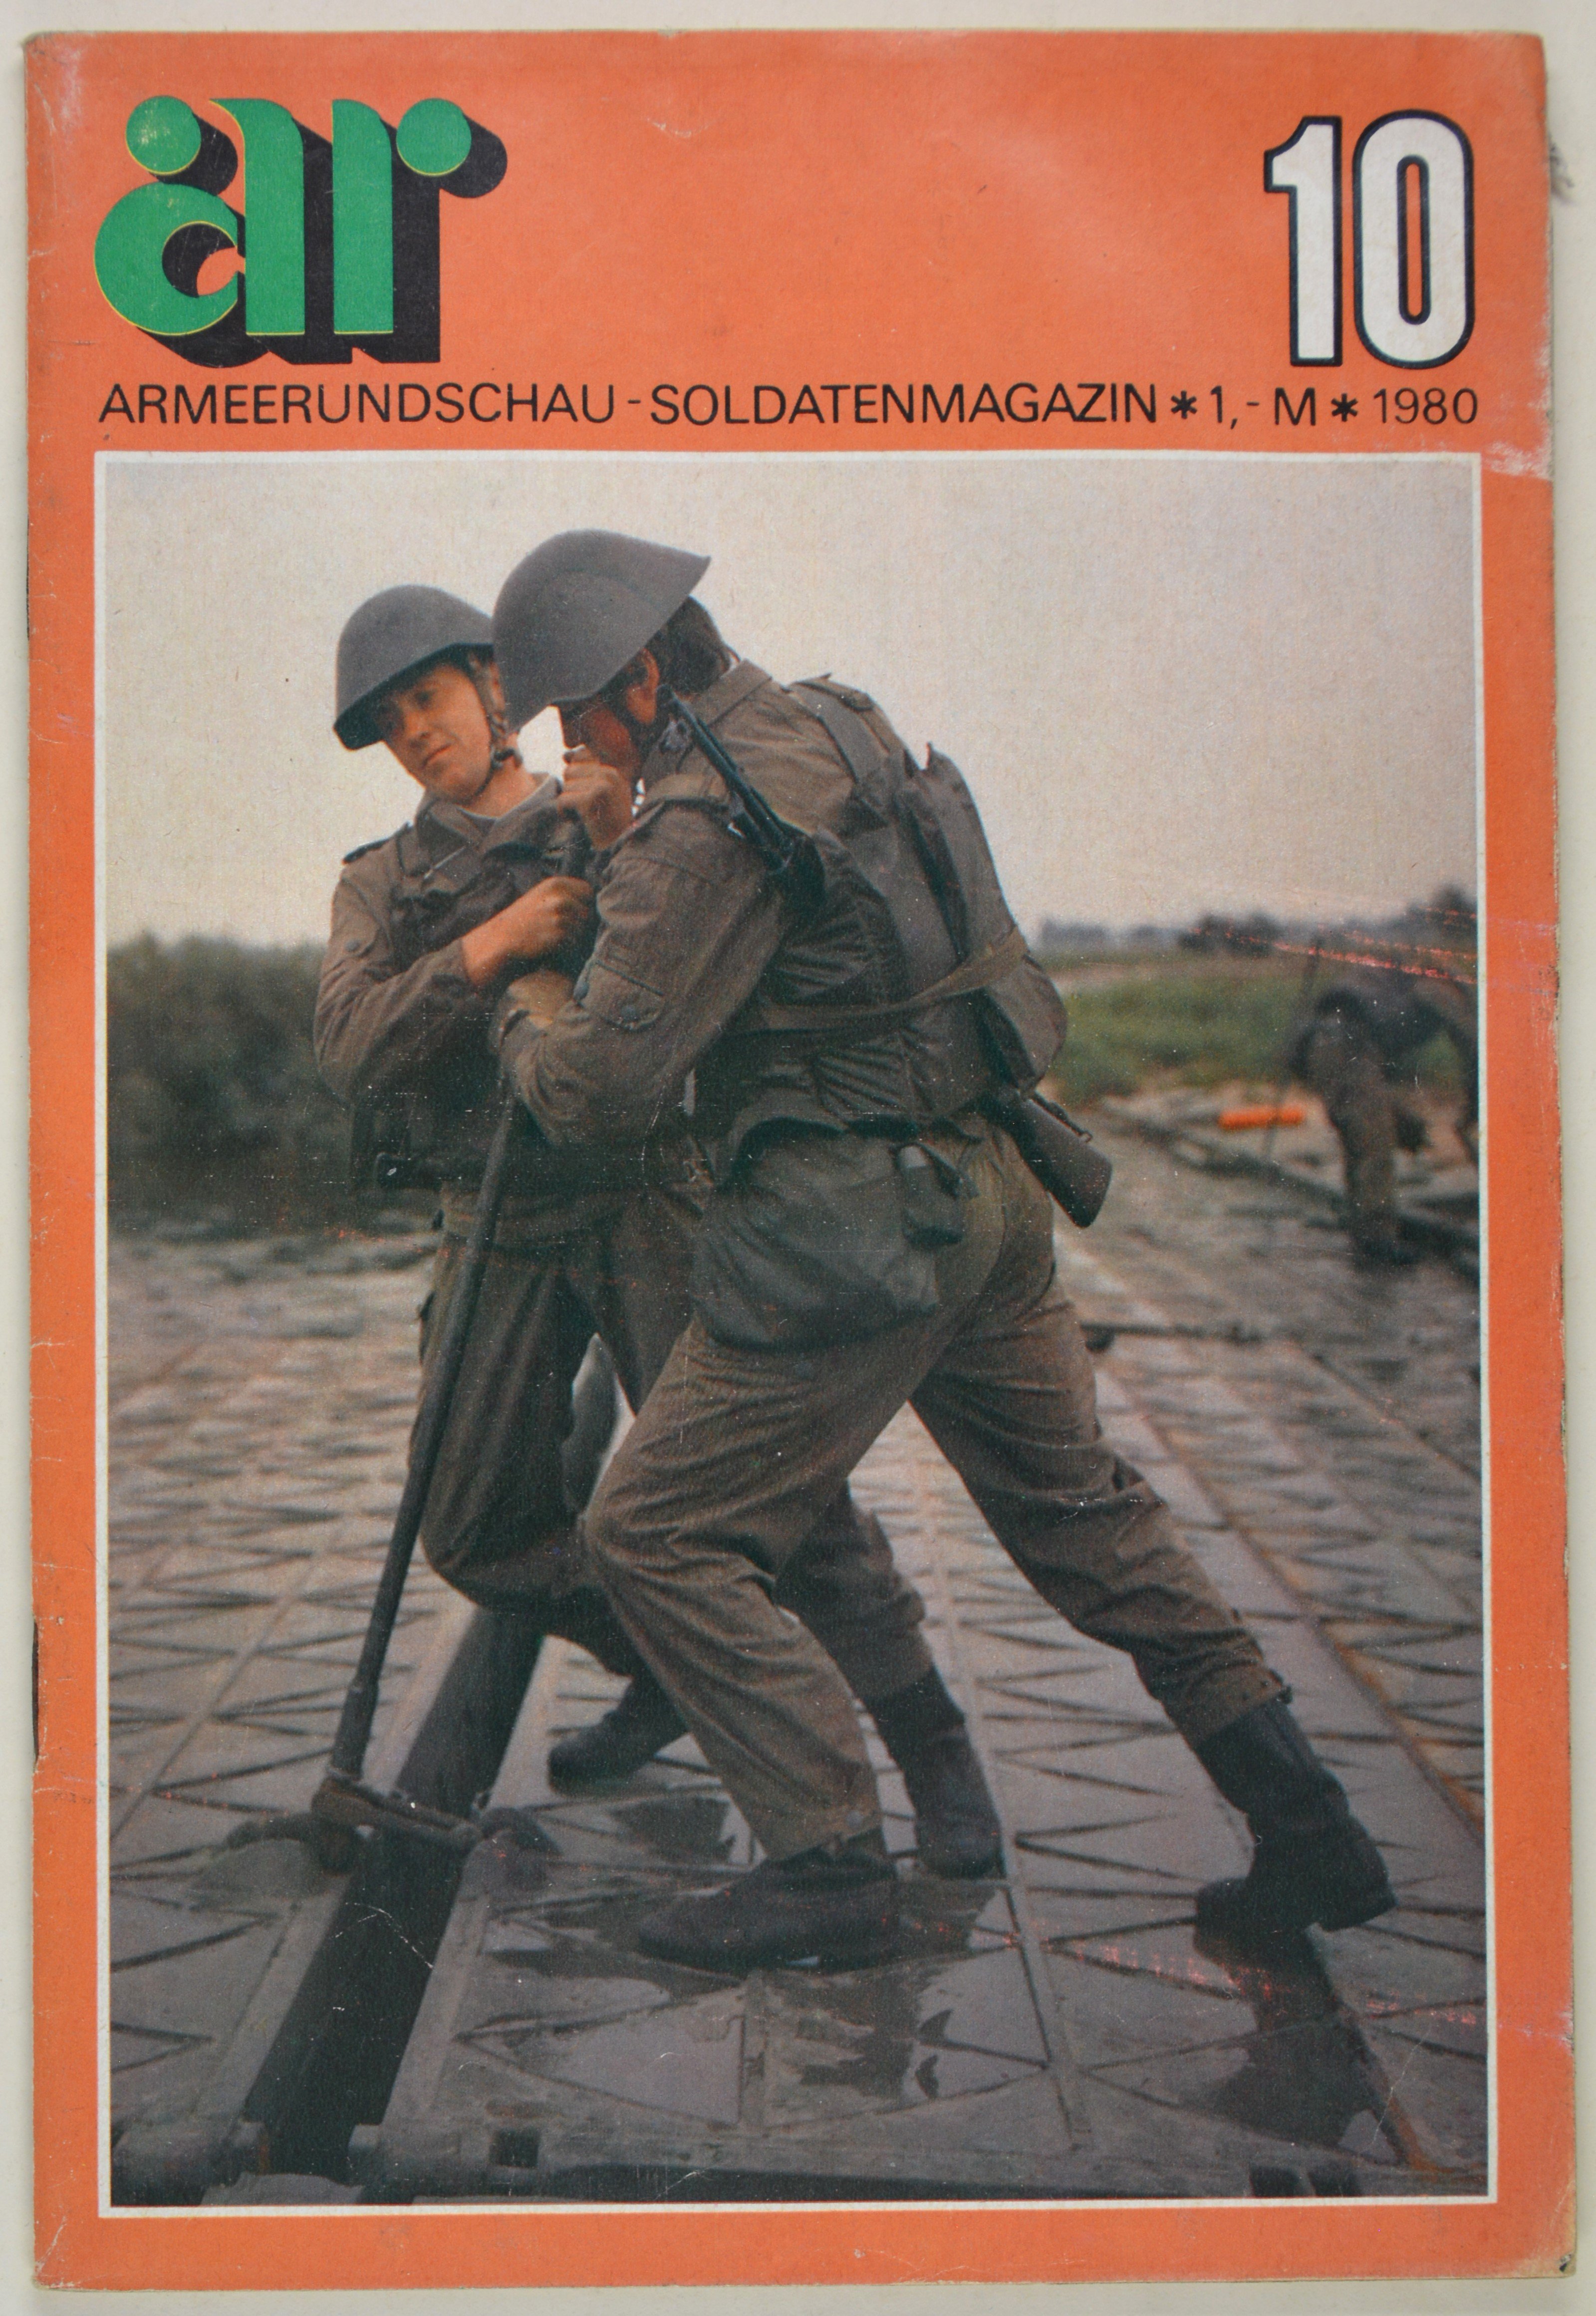 Armeerundschau - Soldatenmagazin (1980), Heft 10 (DDR Geschichtsmuseum im Dokumentationszentrum Perleberg CC BY-SA)